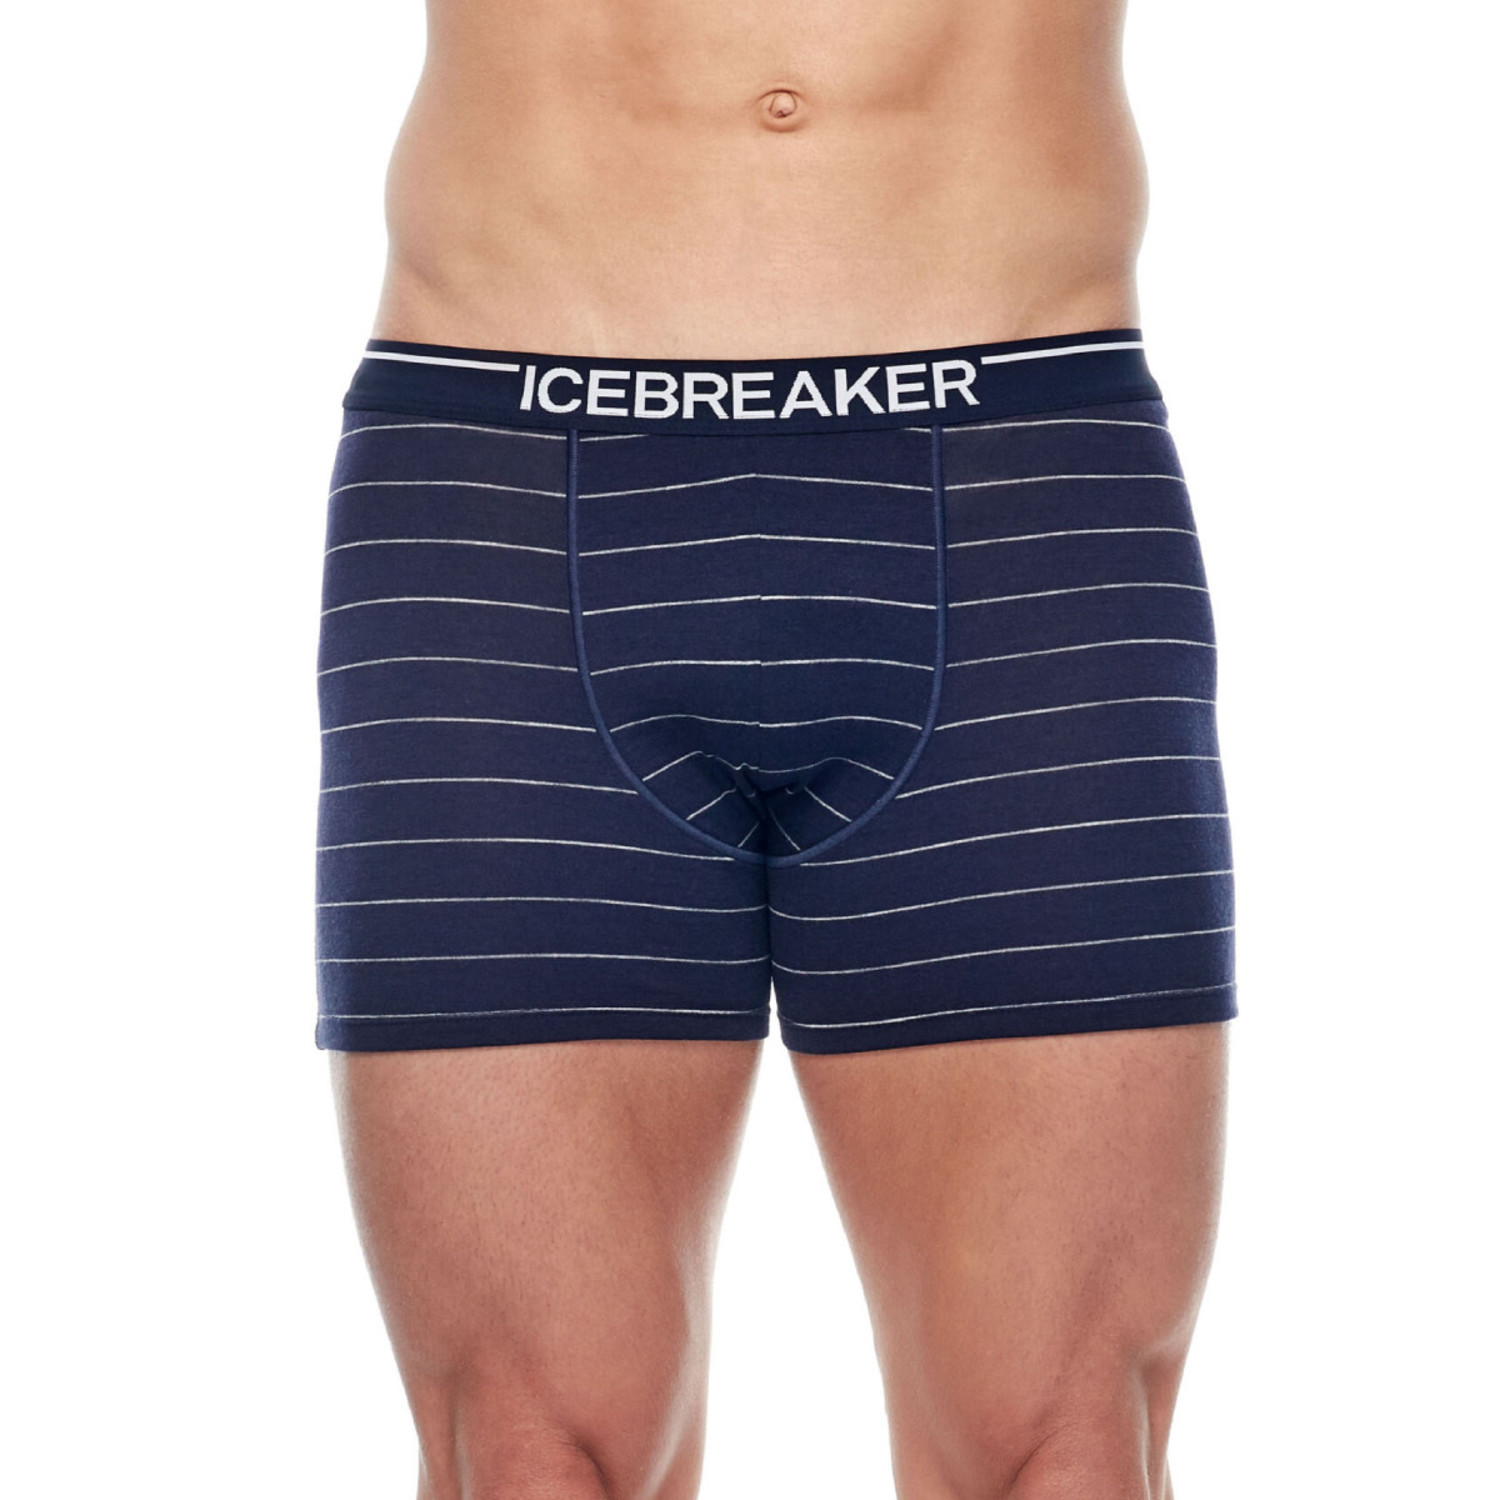 Icebreaker Men's Anatomica Boxers - True Outdoors